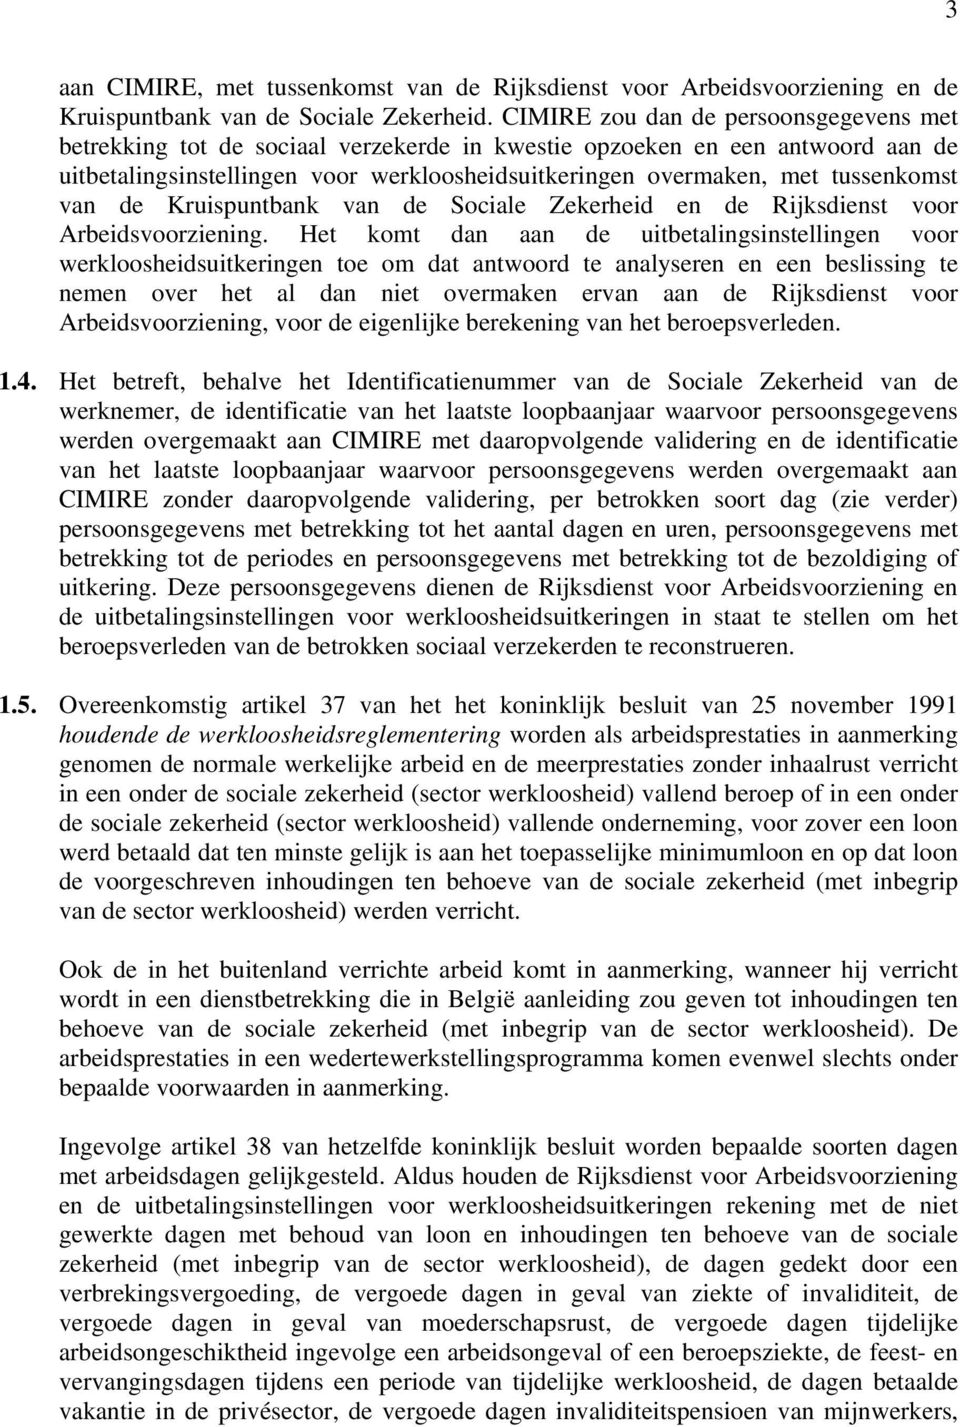 tussenkomst van de Kruispuntbank van de Sociale Zekerheid en de Rijksdienst voor Arbeidsvoorziening.